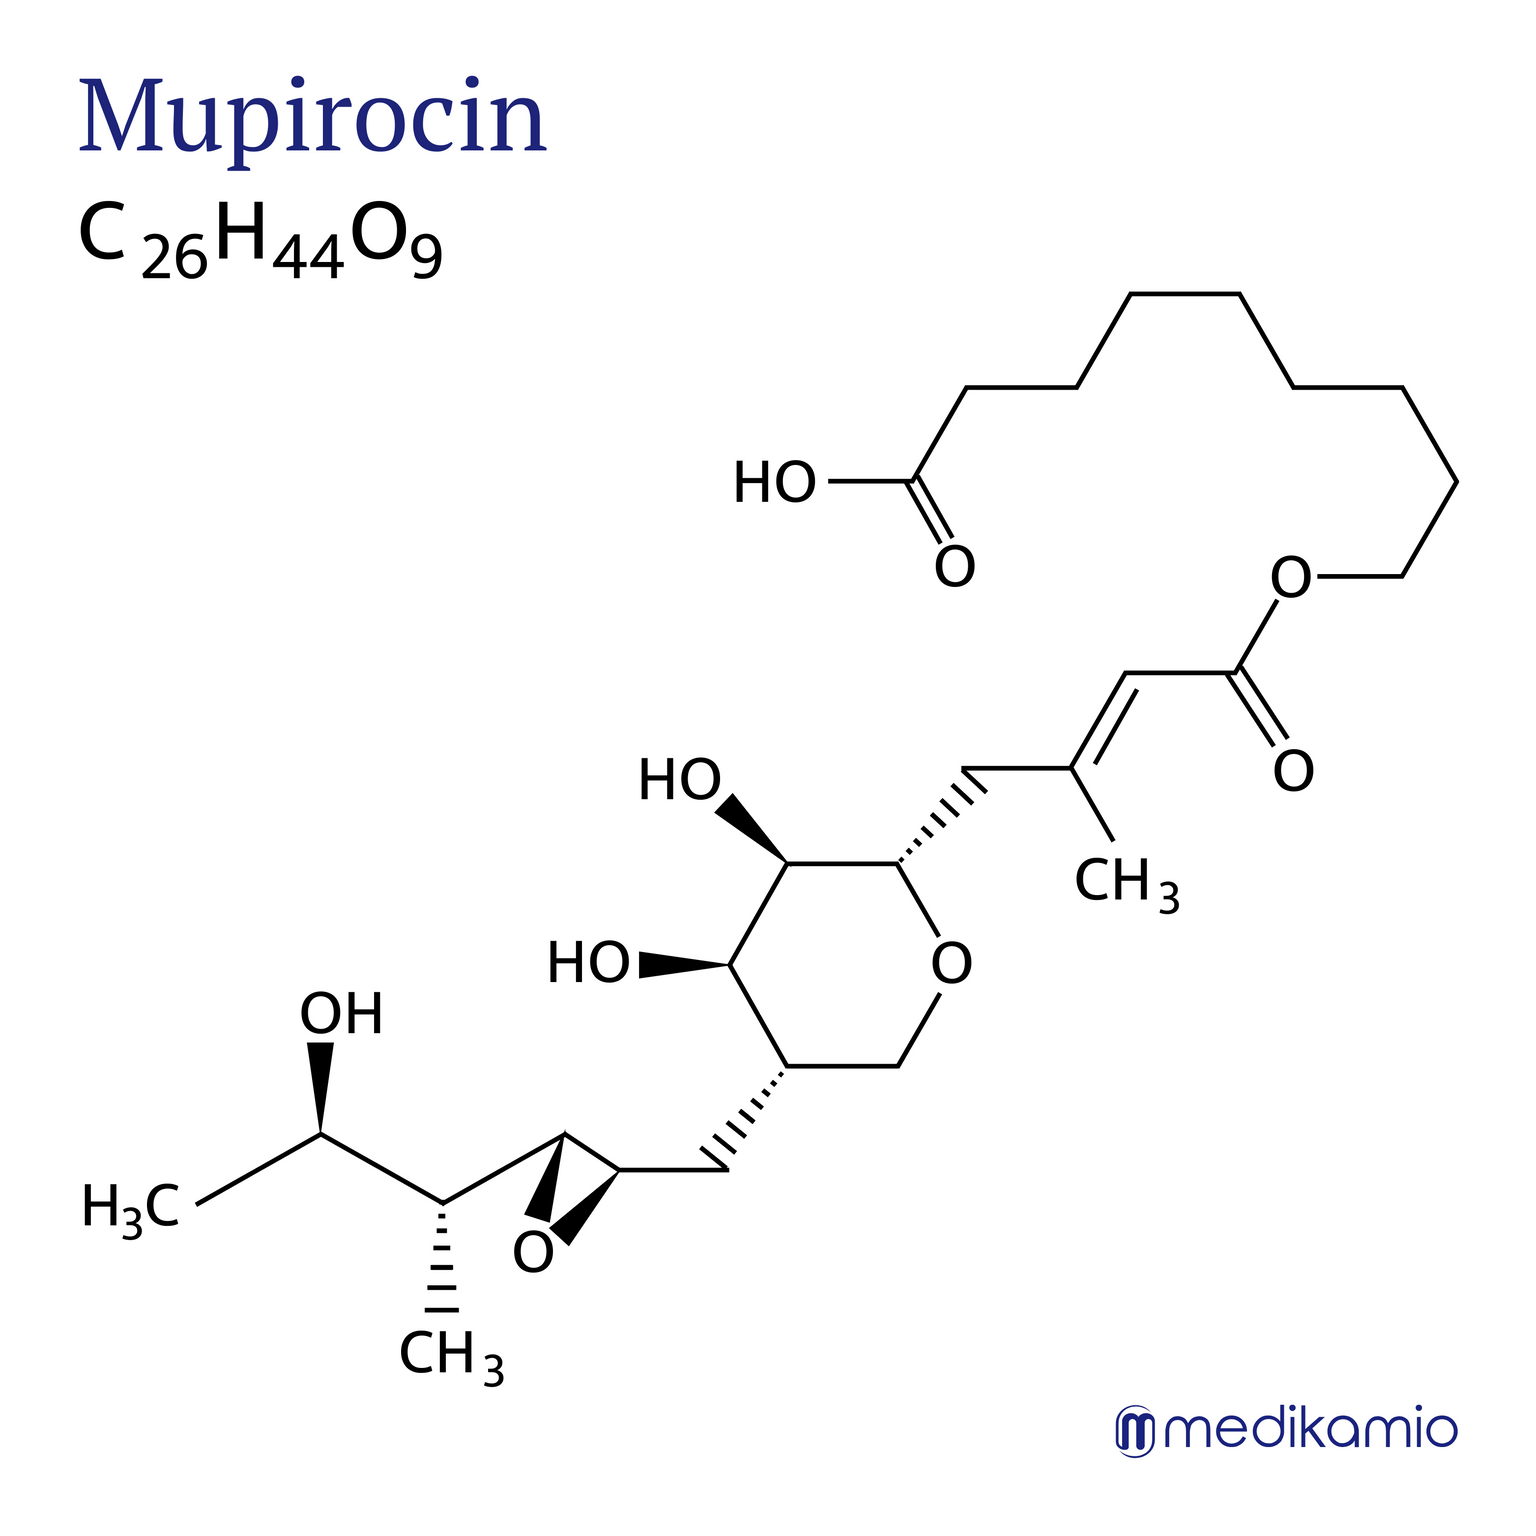 Fórmula estructural gráfica de la sustancia activa mupirocina